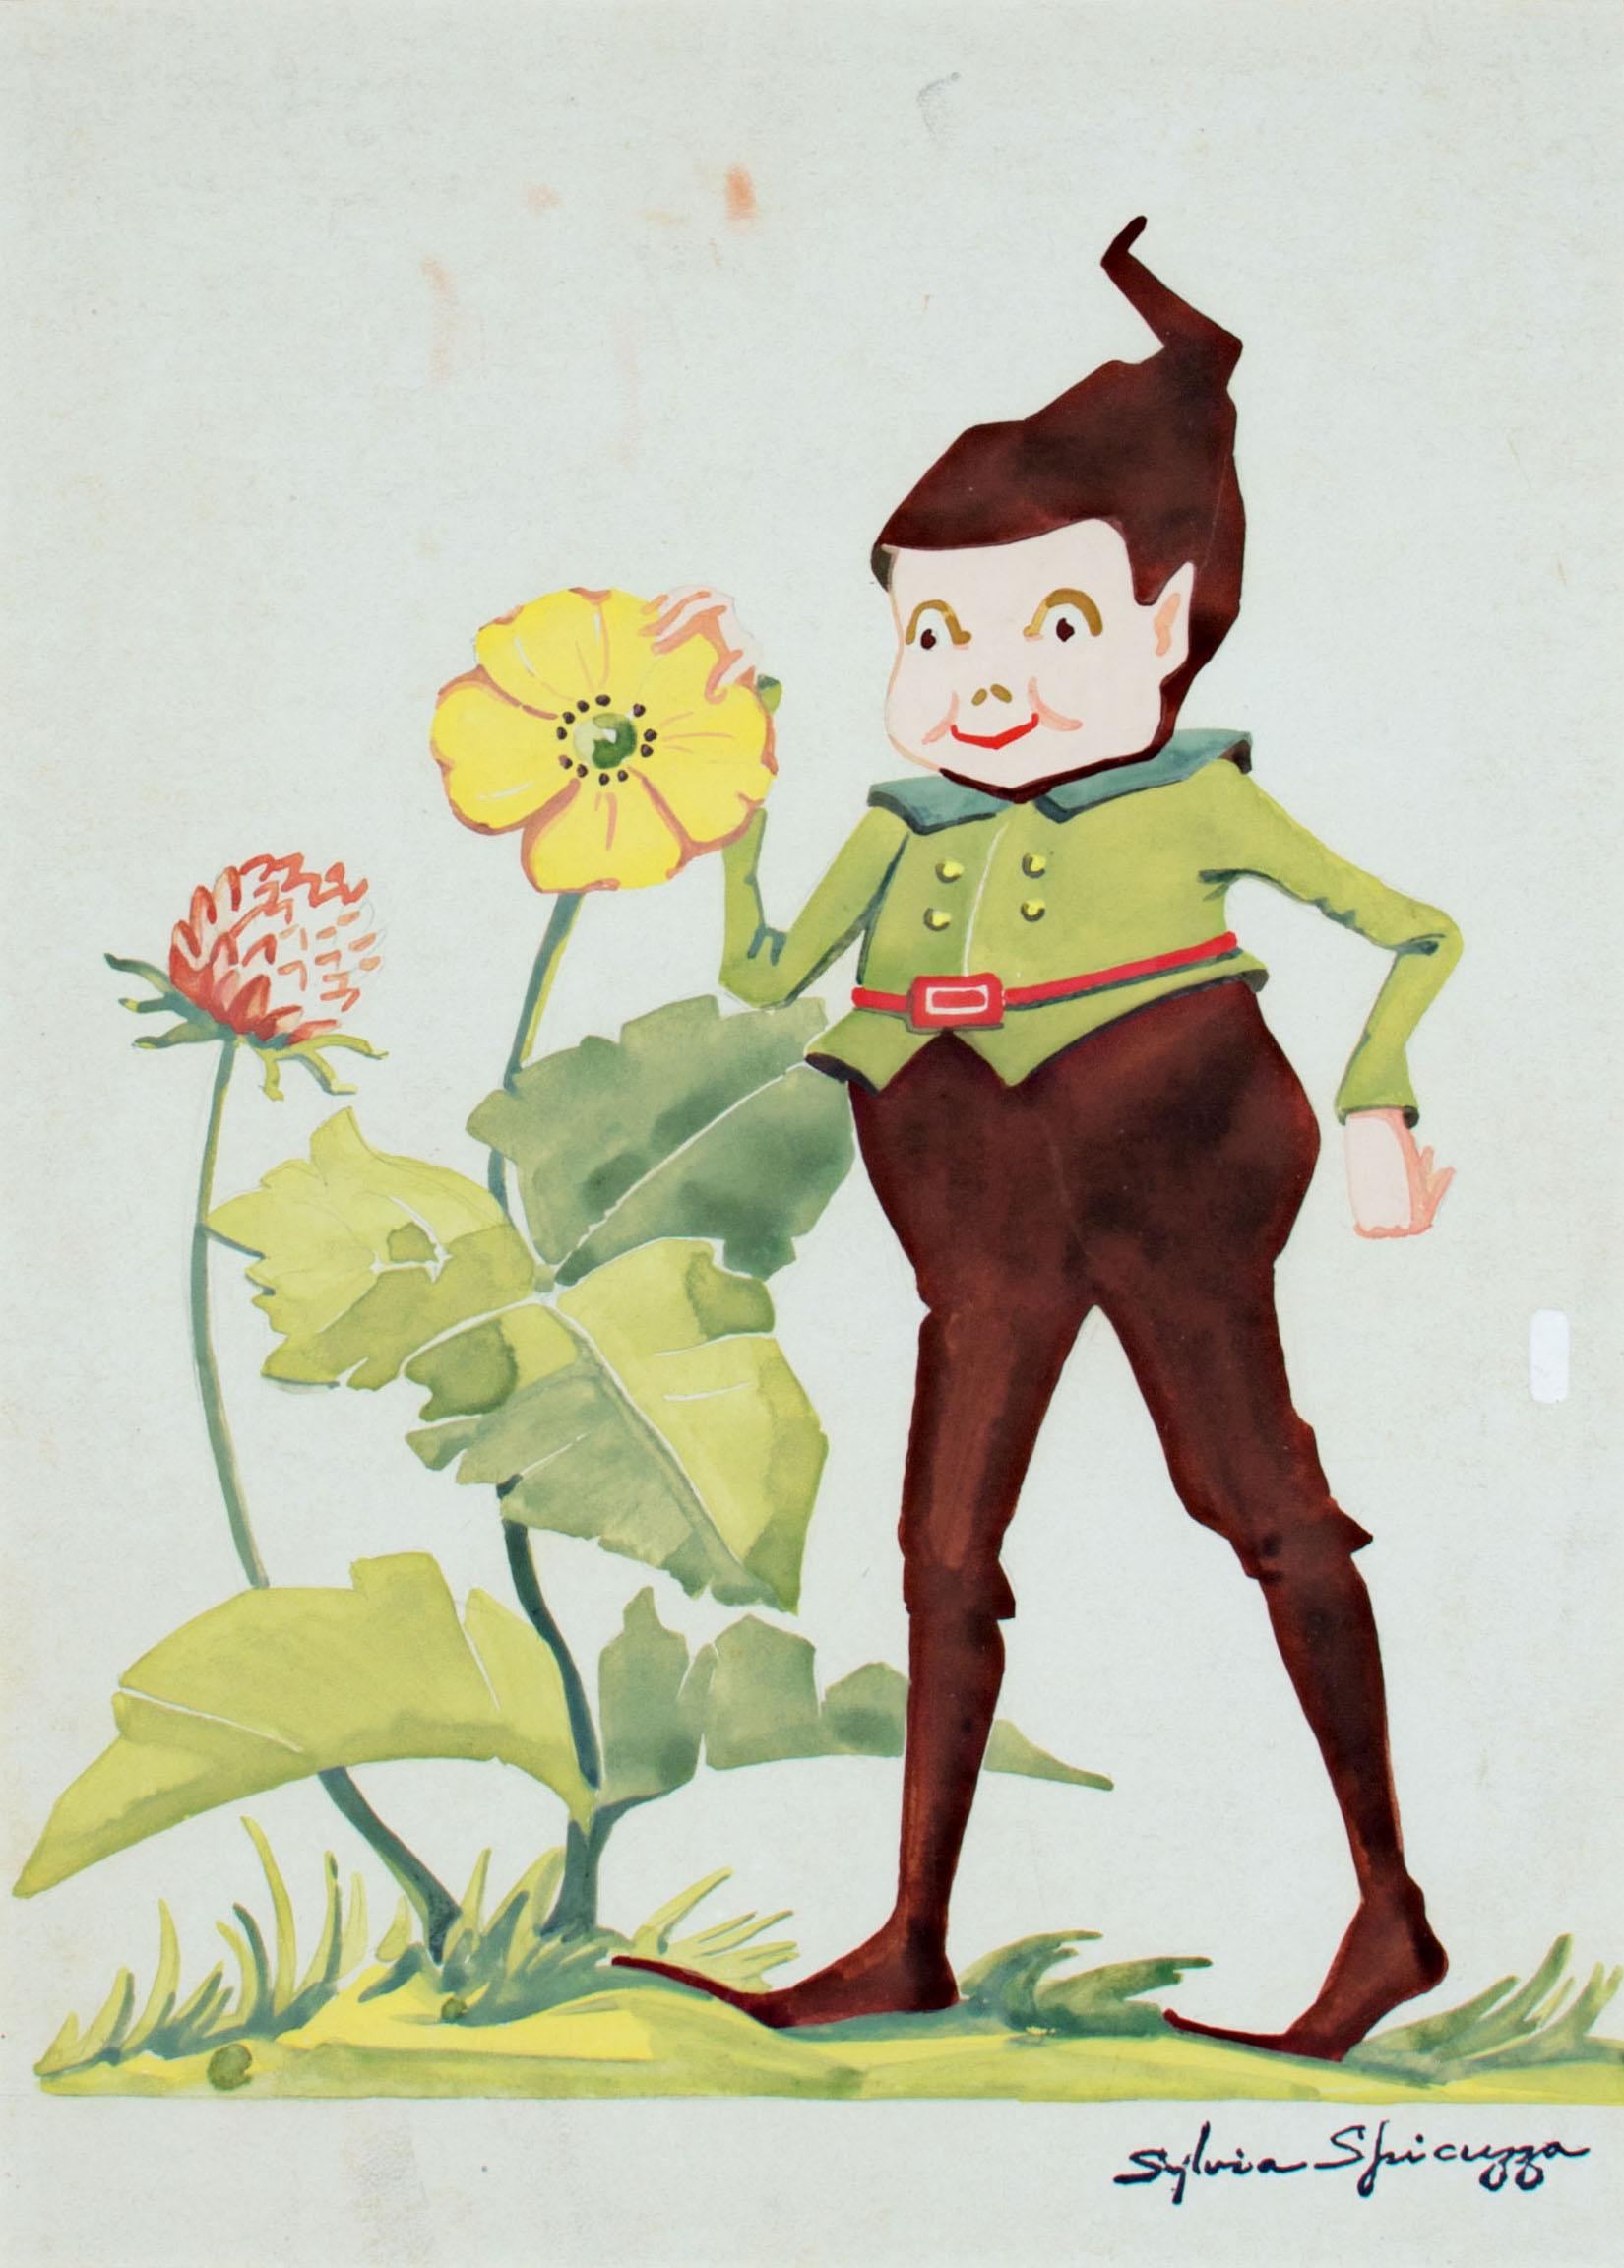 Auf diesem Bild zeigt Sylvia Spicuzza ihr Können als Illustratorin, indem sie die Milwaukee-Figur Billie the Brownie mit einem Paar Blumen darstellt. Eine Illustration wie diese könnte die Seiten eines Kinderbuchs oder einer illustrierten